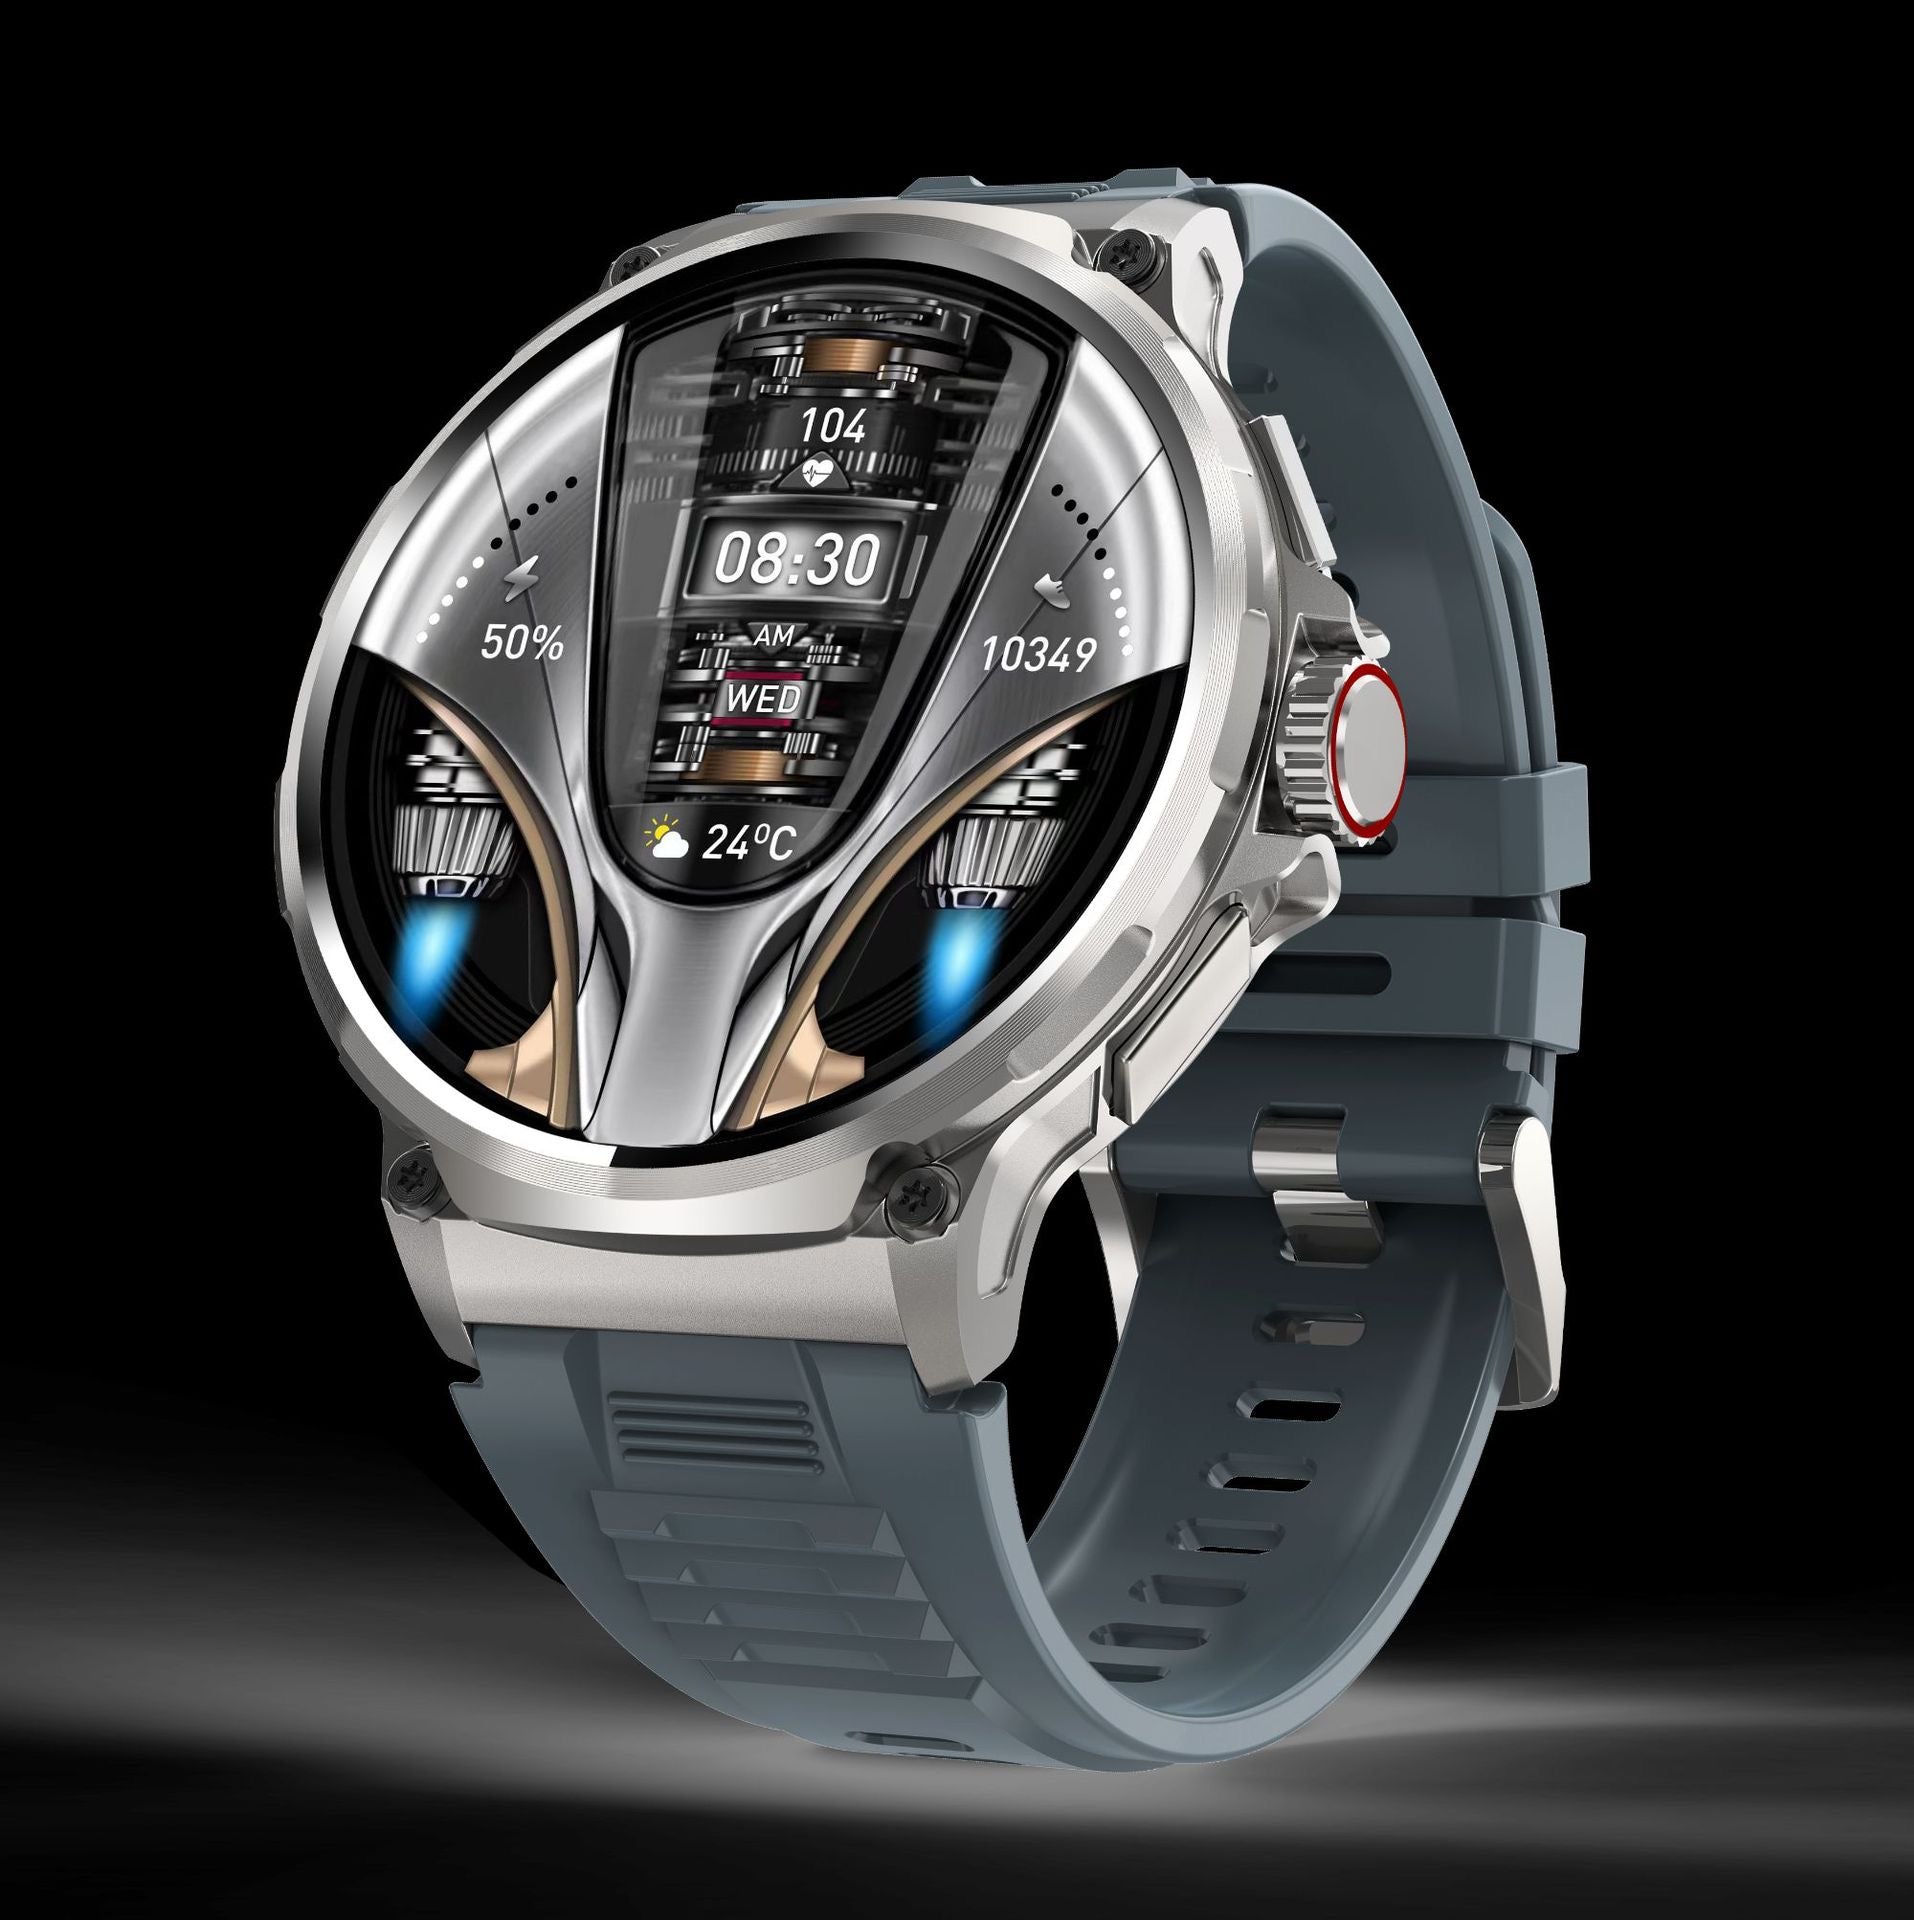 atongm 1.85 inç V69 Bluetooth çağrı akıllı saat 360*360 geniş ekran çok spor akıllı saat